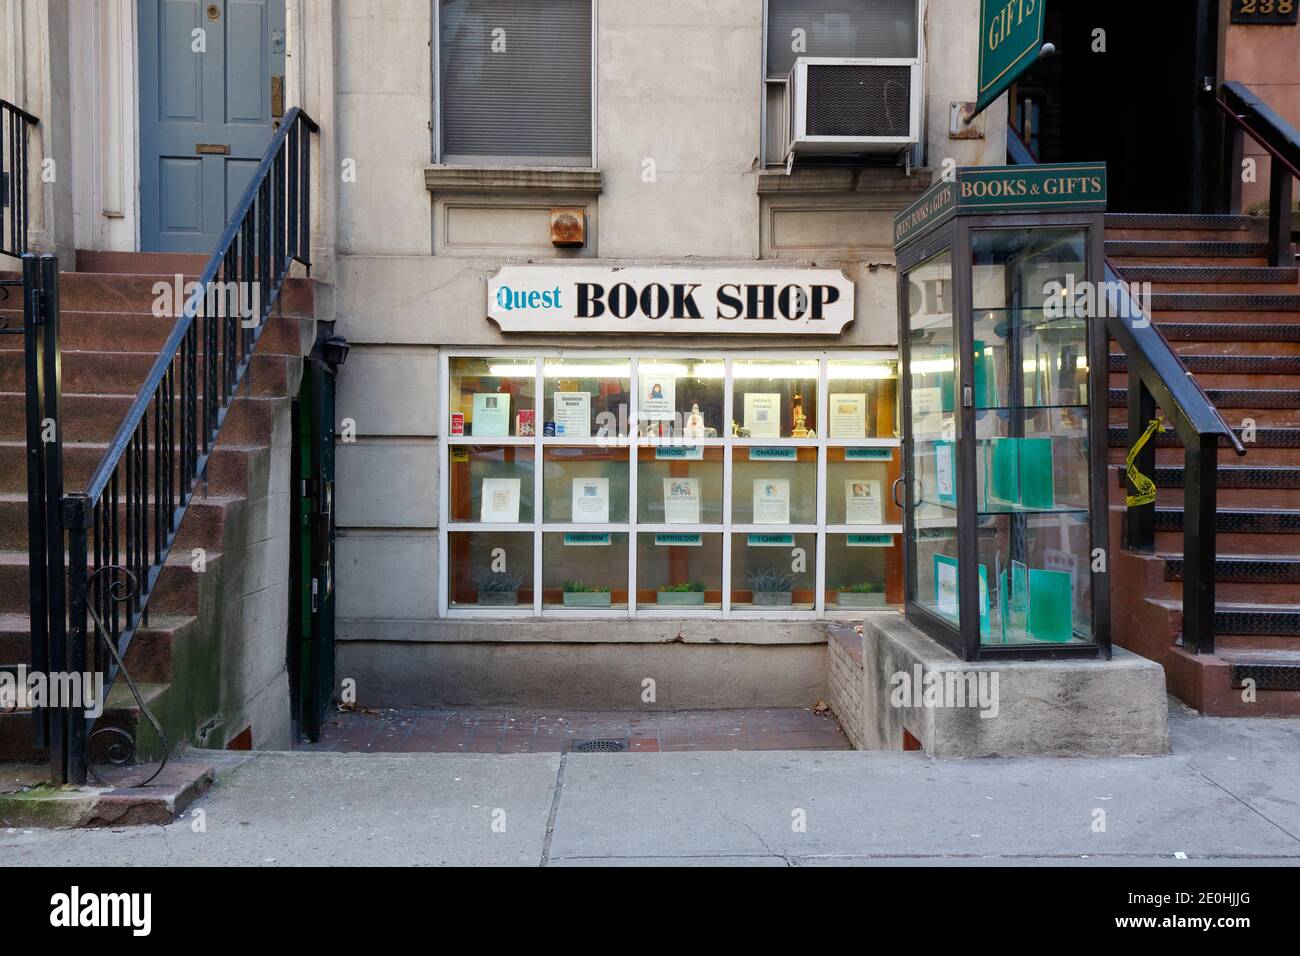 Quest Bookshop, 240 E 53. St, New York, NYC Foto von einer spirituellen und esoterischen Buchhandlung, die von der New York Theosophical Society betrieben wird. Stockfoto